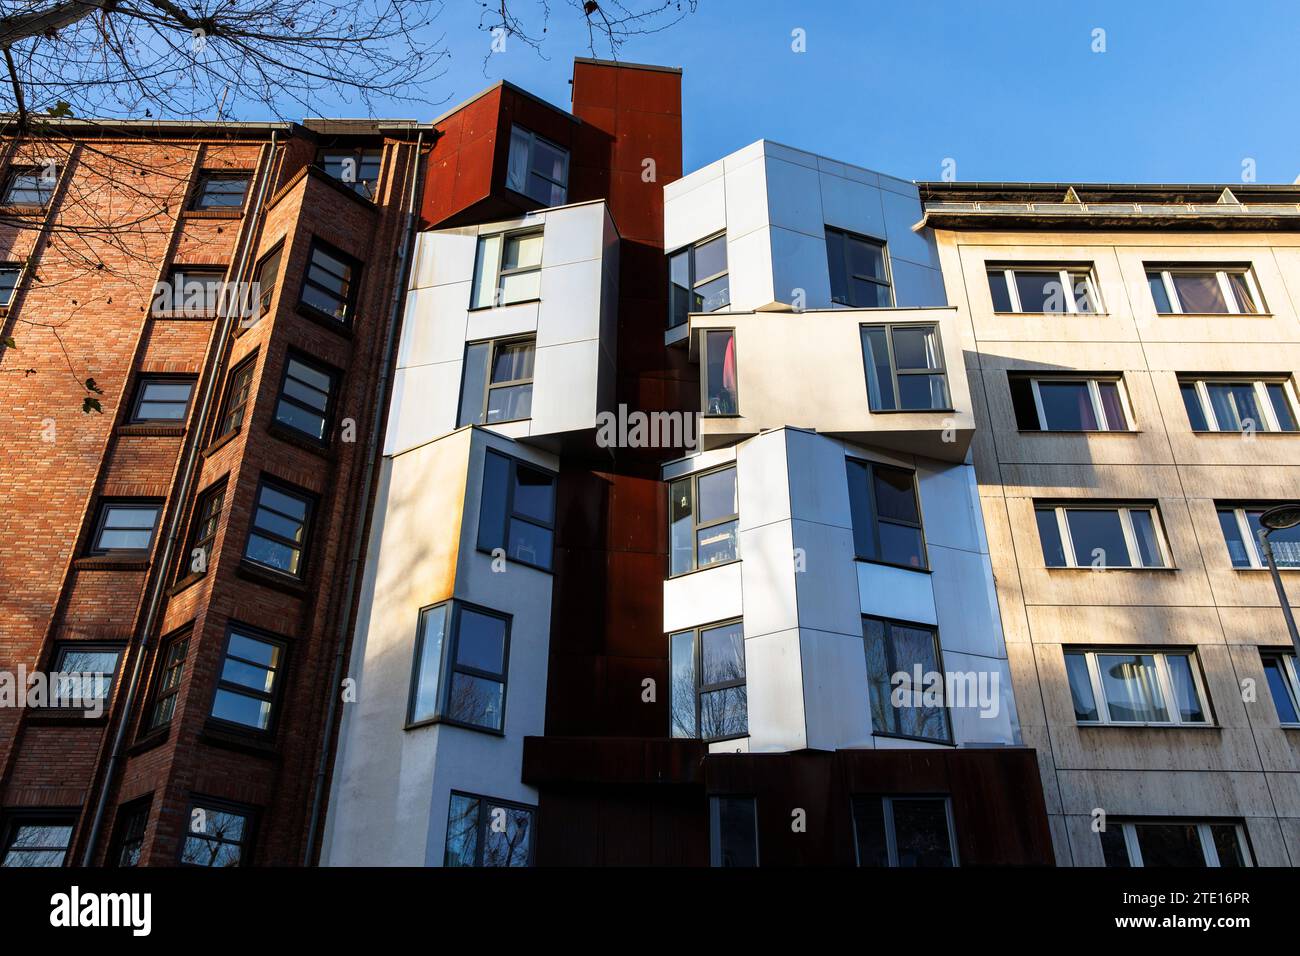 Haus mit kubistischer Fassade an der Straße Hansaring, Köln, Deutschland Haus mit kubistischer Fassade am Hansaring, Köln, Deutschland. Stockfoto